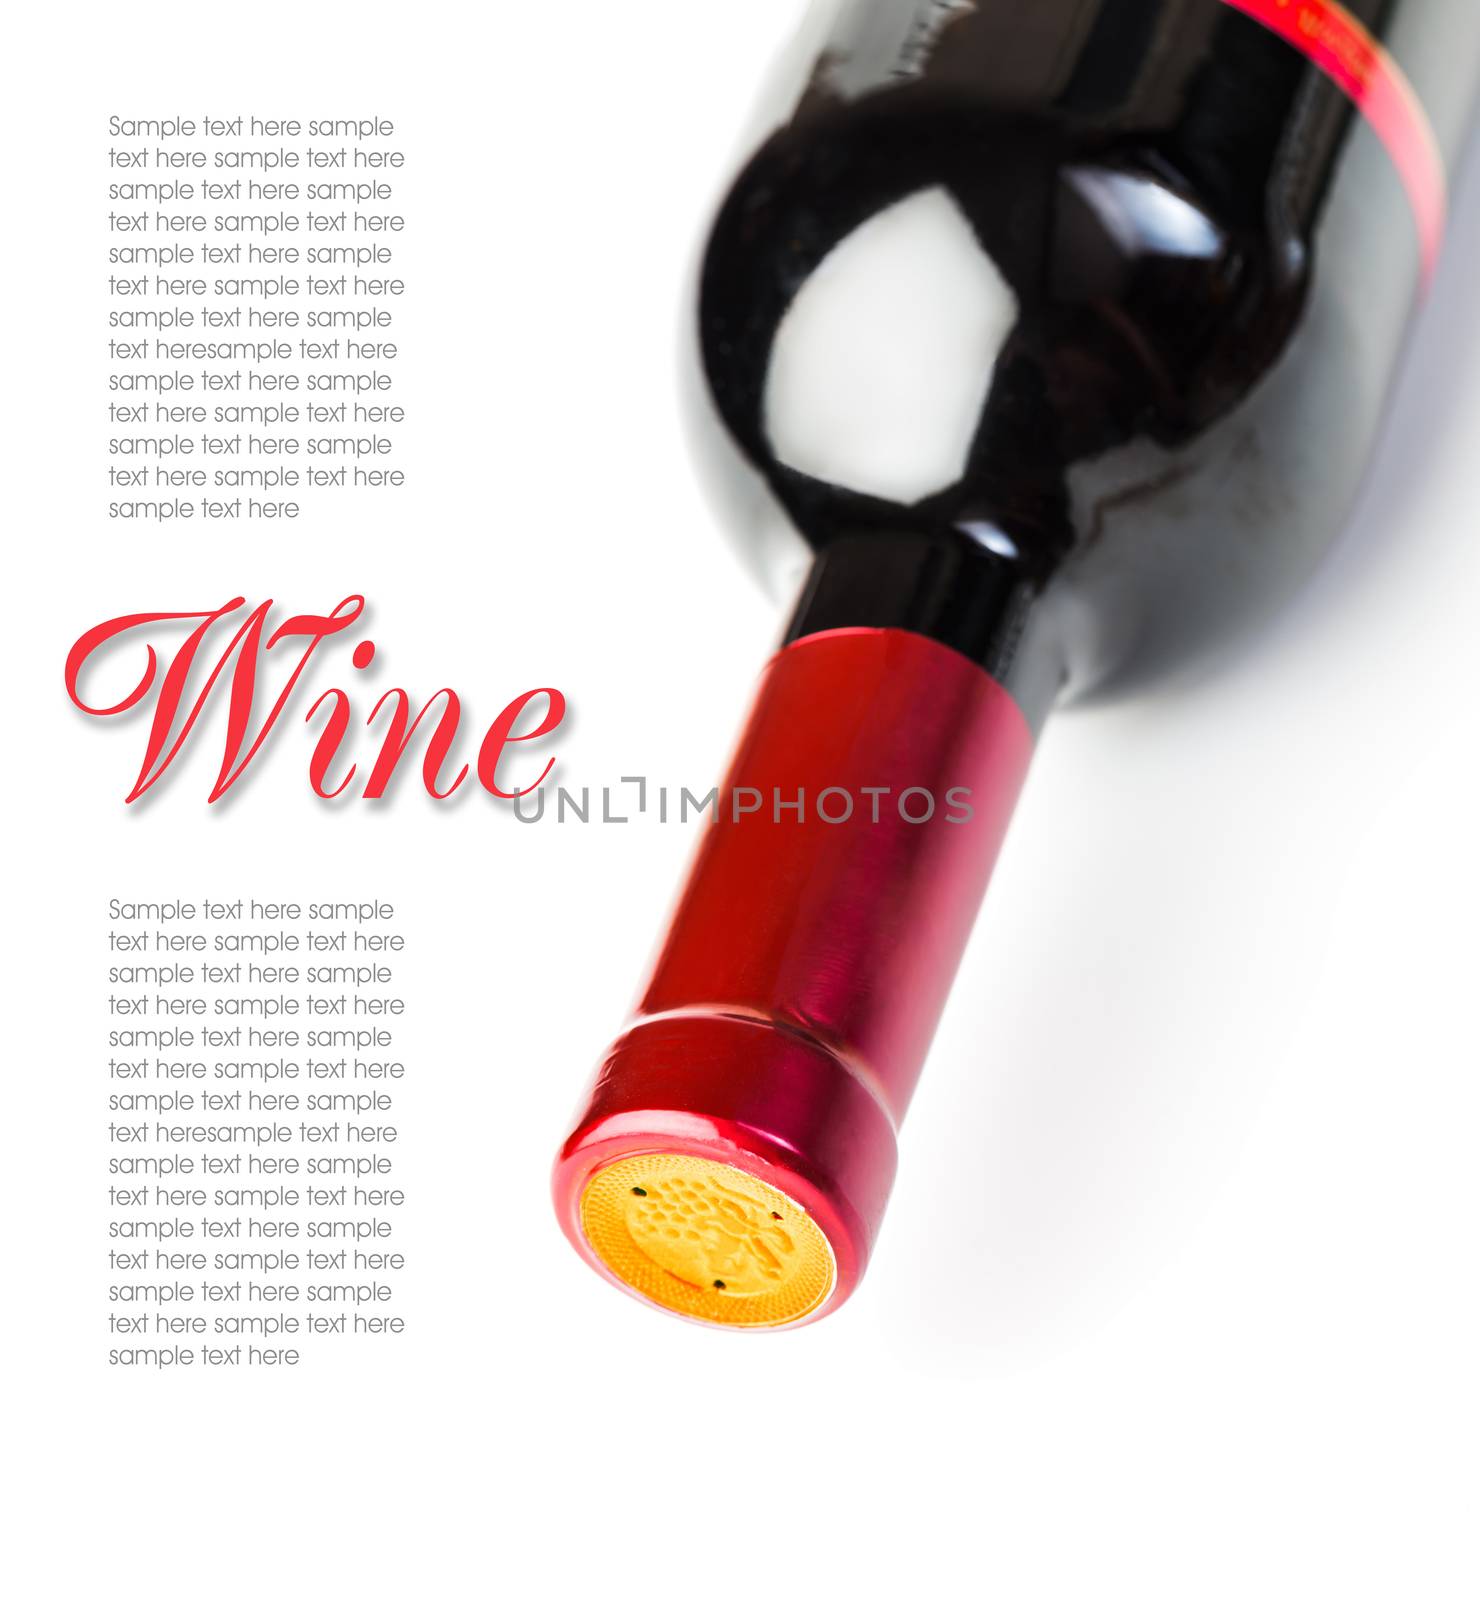 The bottle of wine by oleg_zhukov